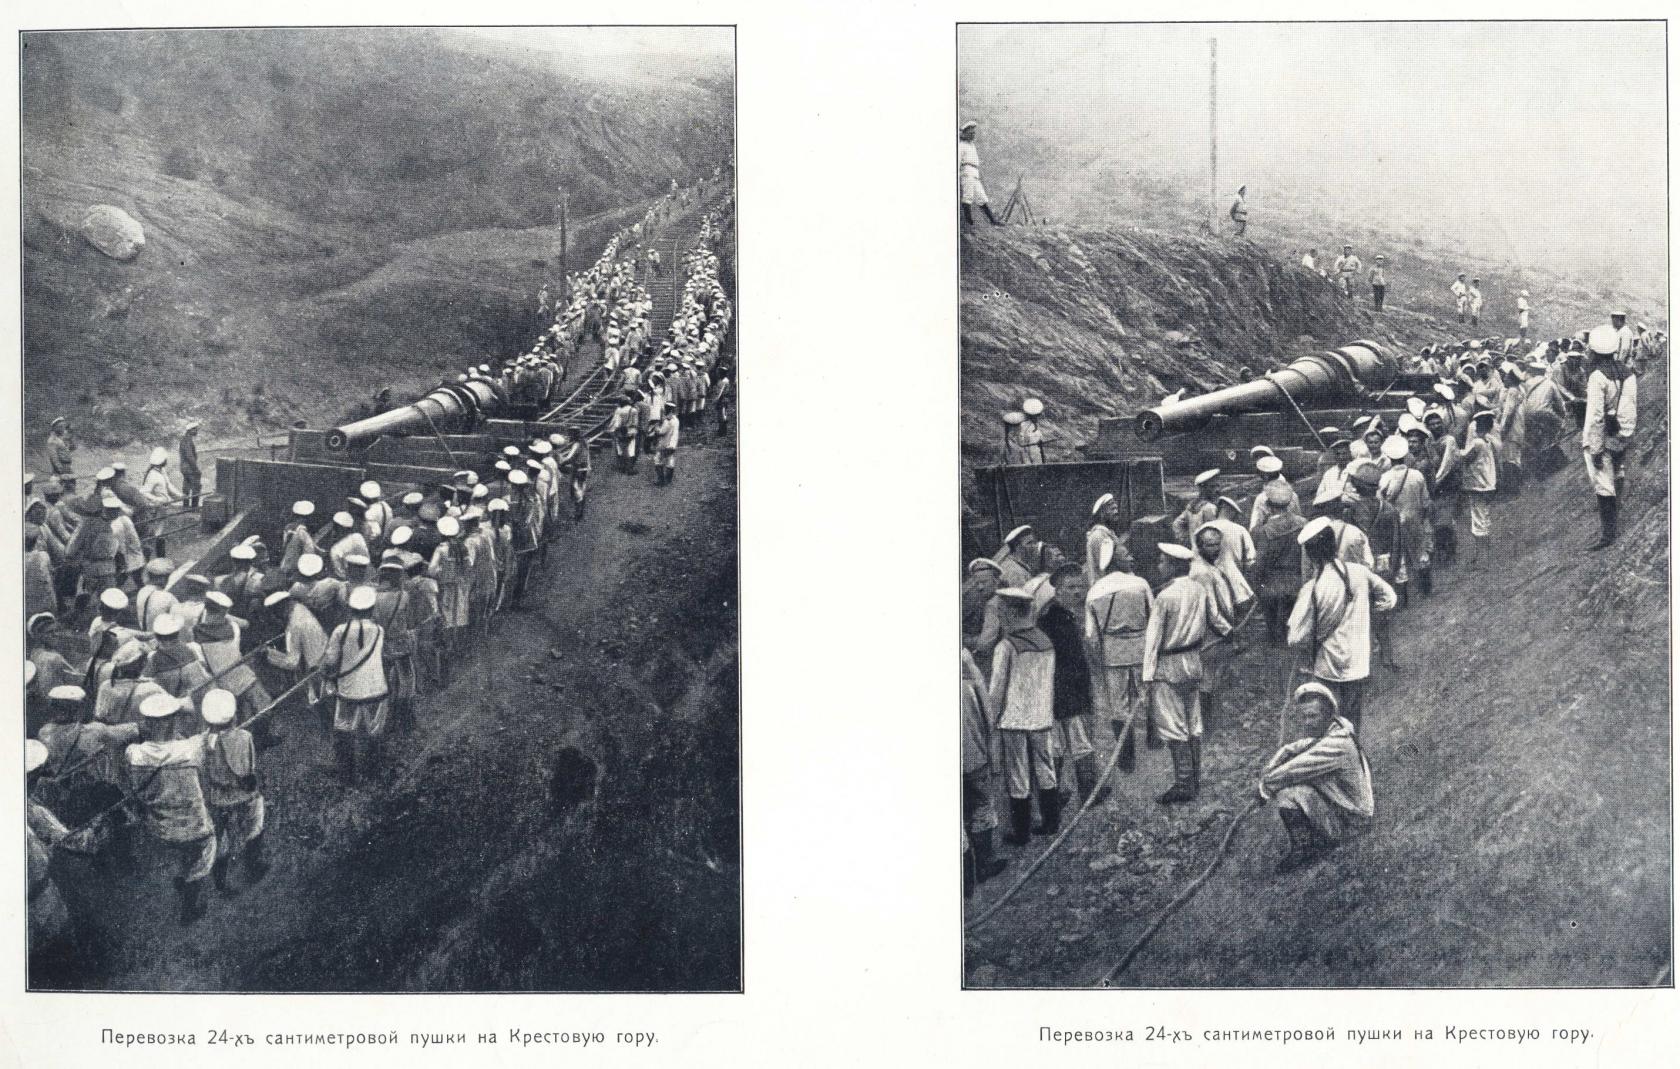 Порт-Артурский альбом, 1904-1905 гг. Часть 3 и последняя.